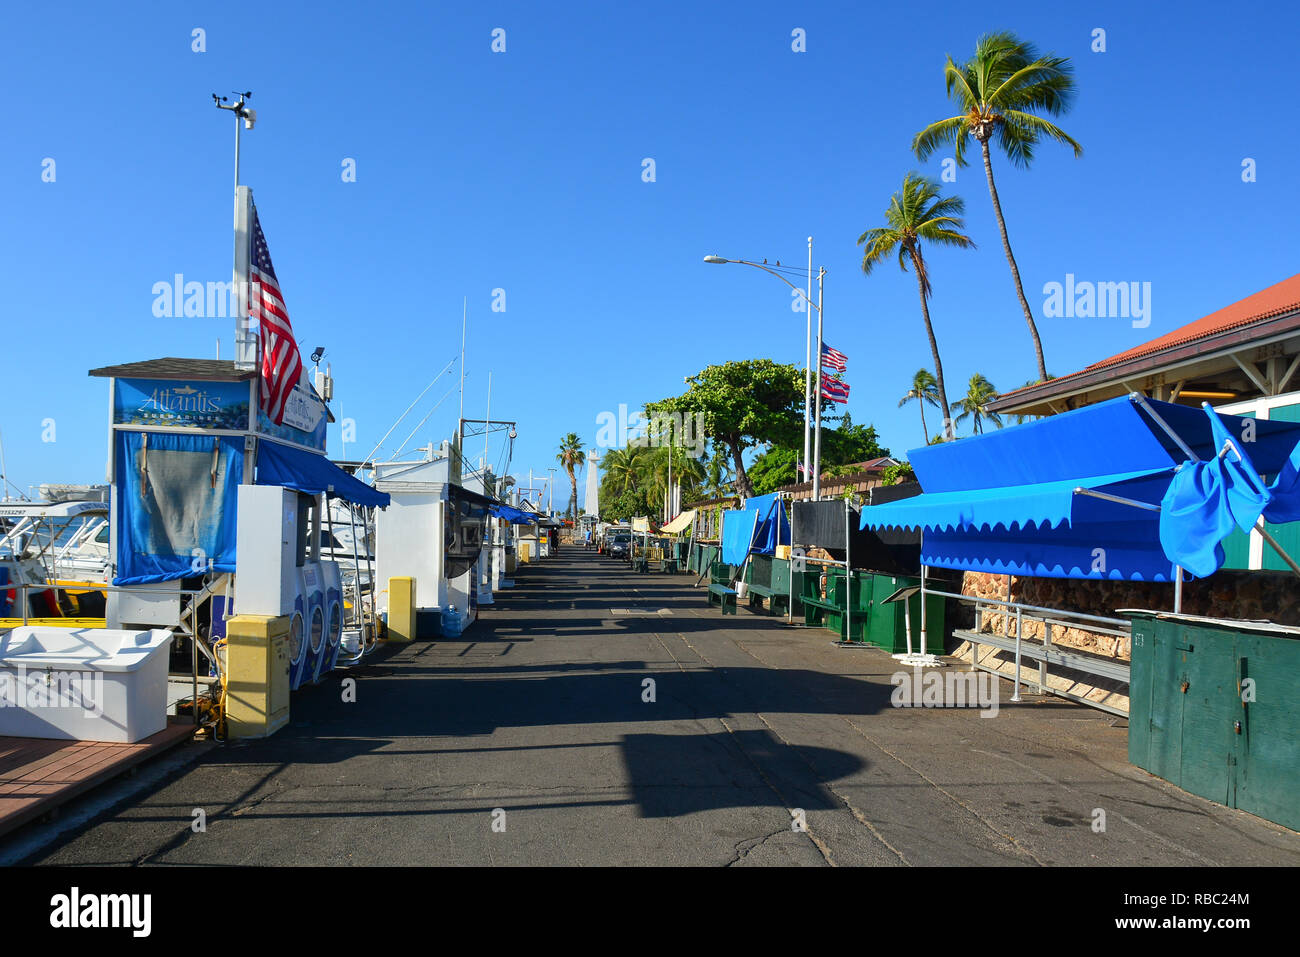 Historische Lahaina, Maui, der ersten Hauptstadt der hawaiischen Inseln und ehemalige Walfängerstadt. Stockfoto